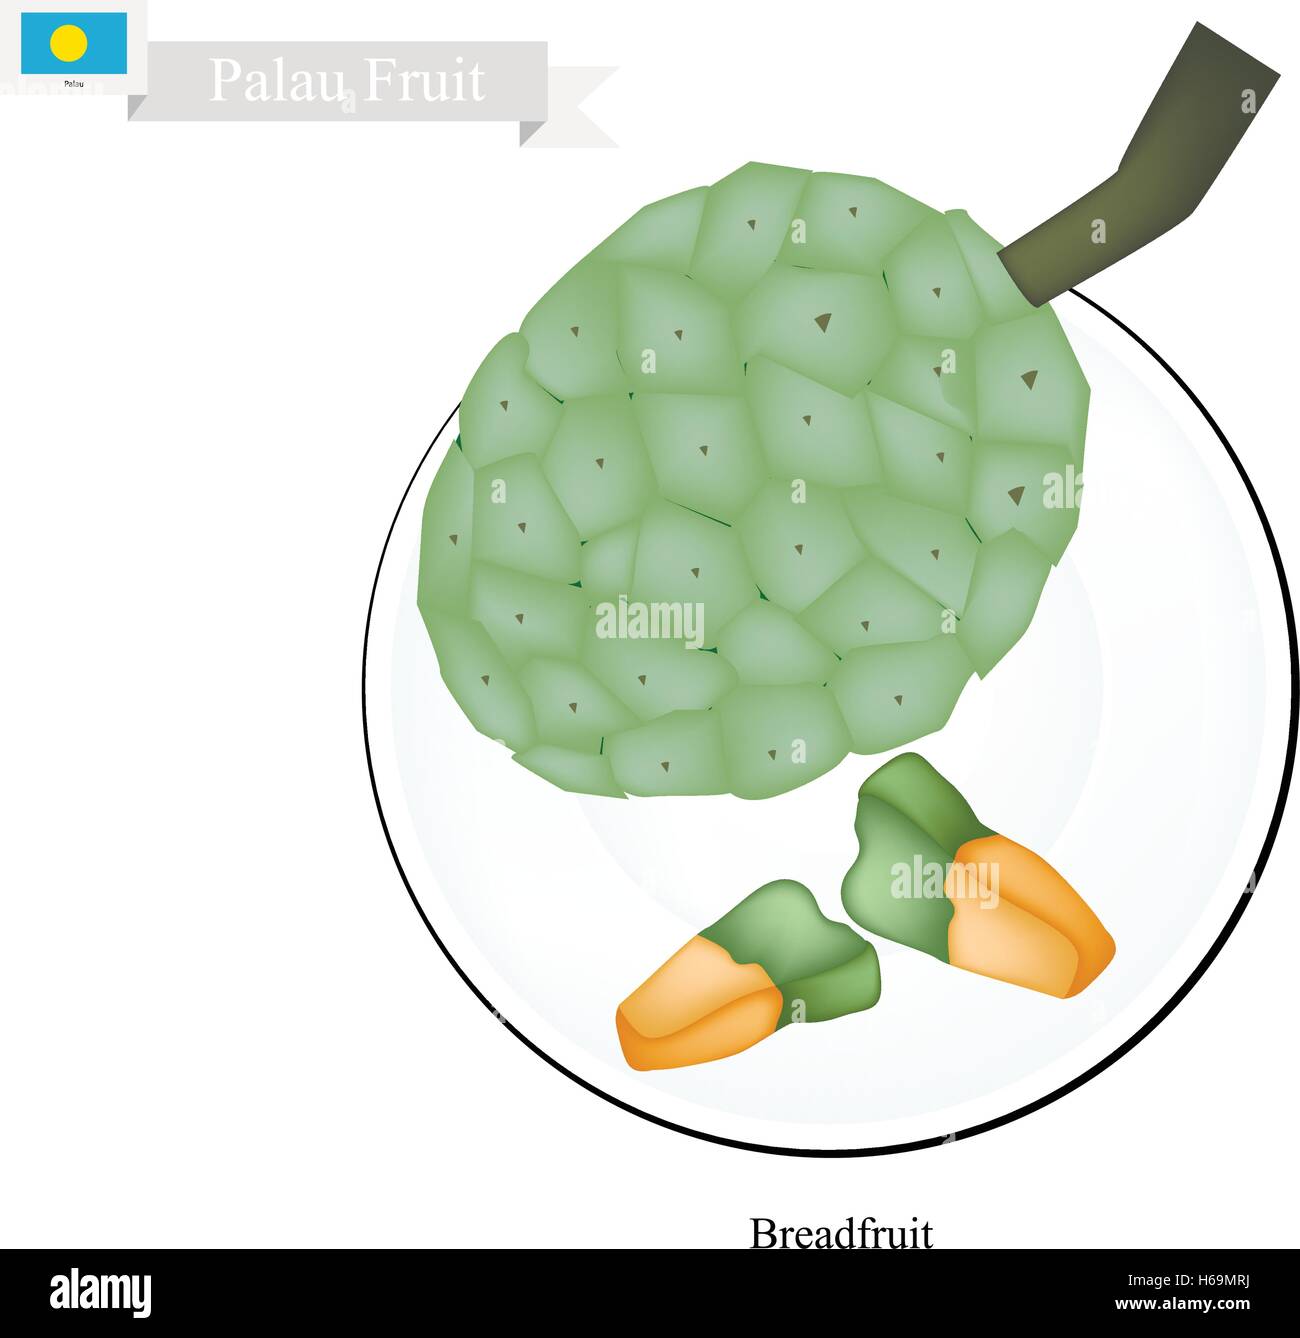 Palau Fruit, Screw Pine, Pandanus Tectorius or Pandanus Odoratissimus. The Native Fruit in Palau. Stock Vector